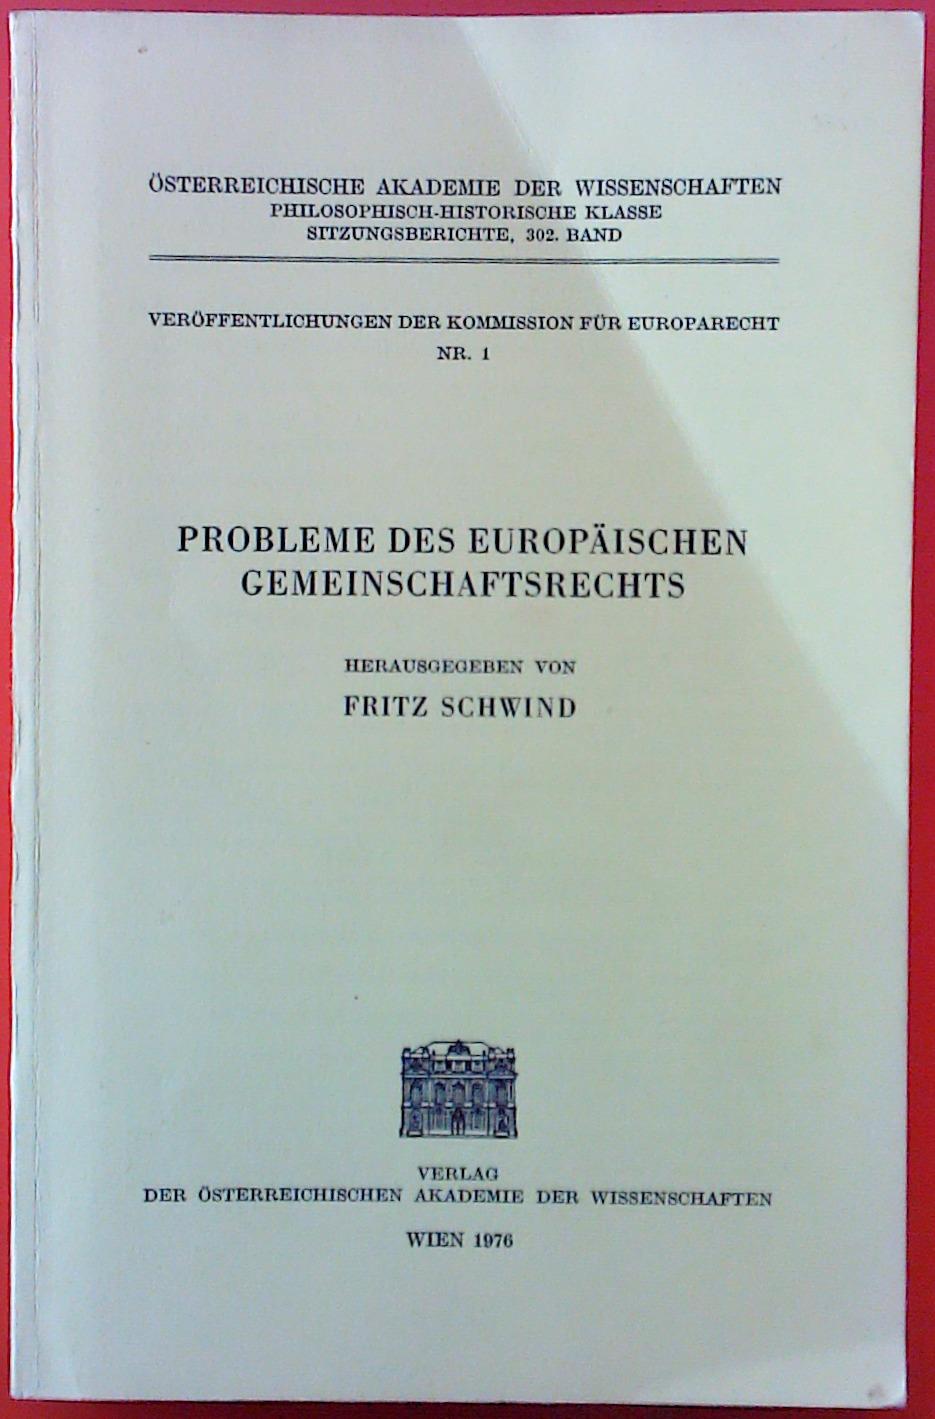 Probleme des Europäischen Gemeinschaftsrechts. Veröffentlichungen der Kommission für Europarecht Nr. 1. Sitzungsberichte, 302. BAND. - Herausgegeben von Fritz Schwind